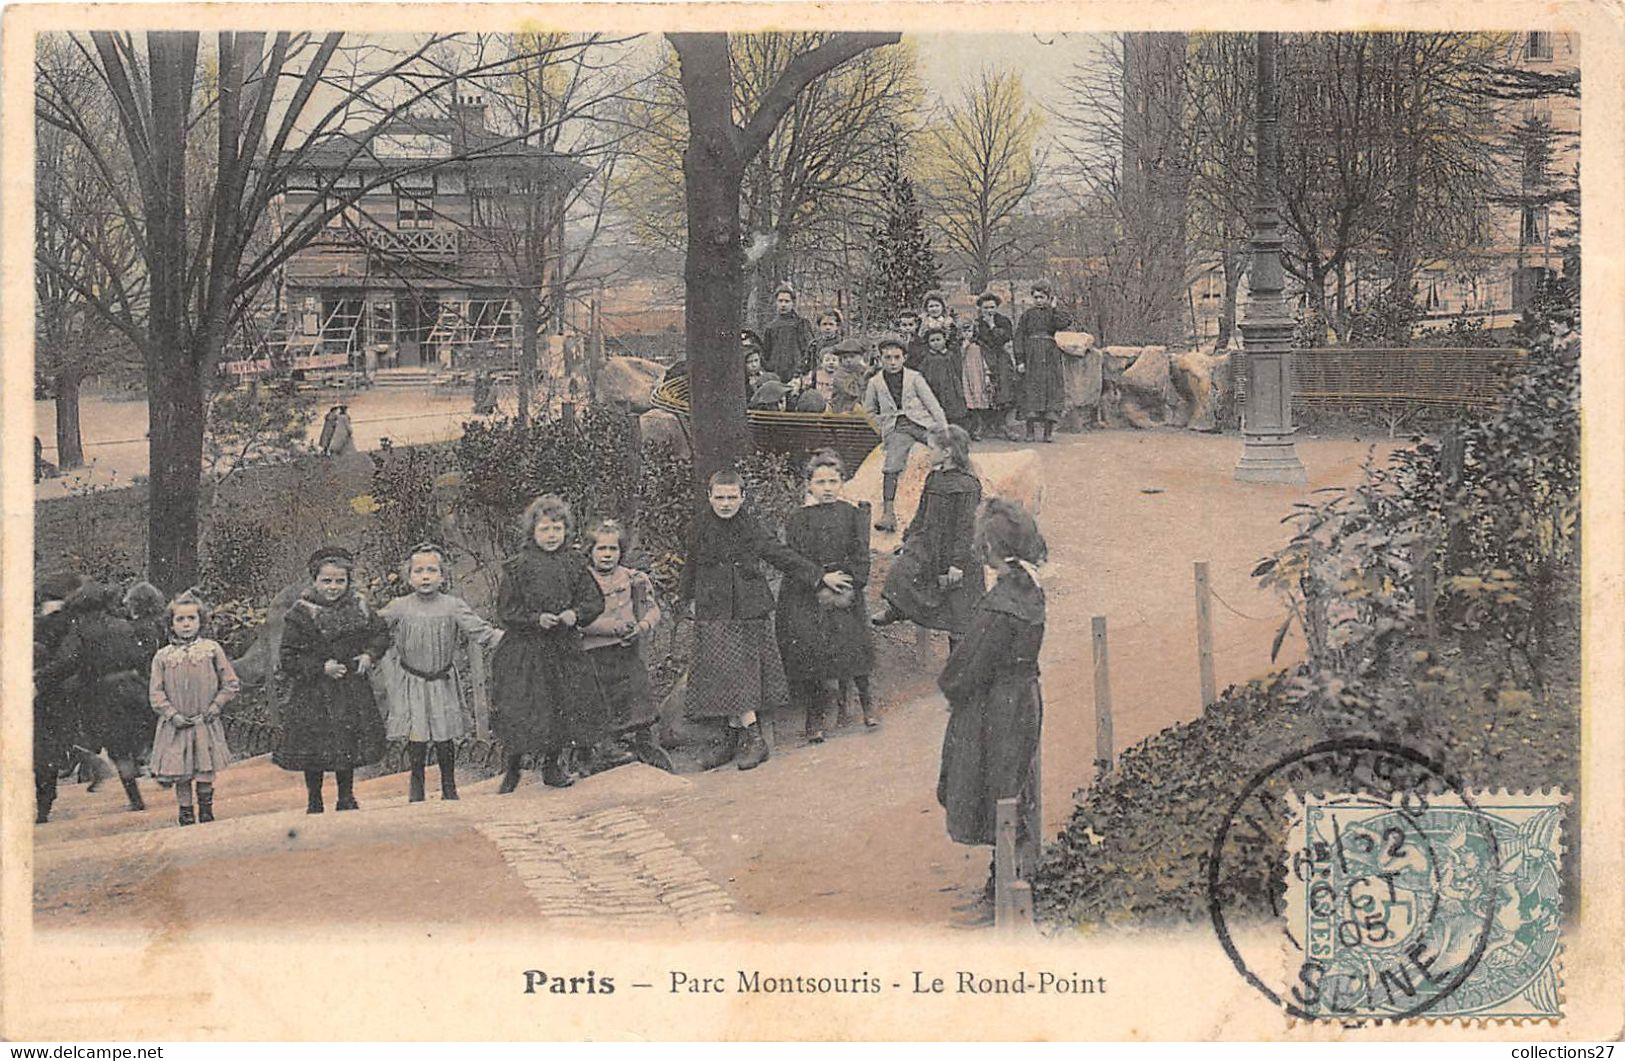 PARIS-75014- PARC MONTSOURIS, LE ROND-POINT - Paris (14)